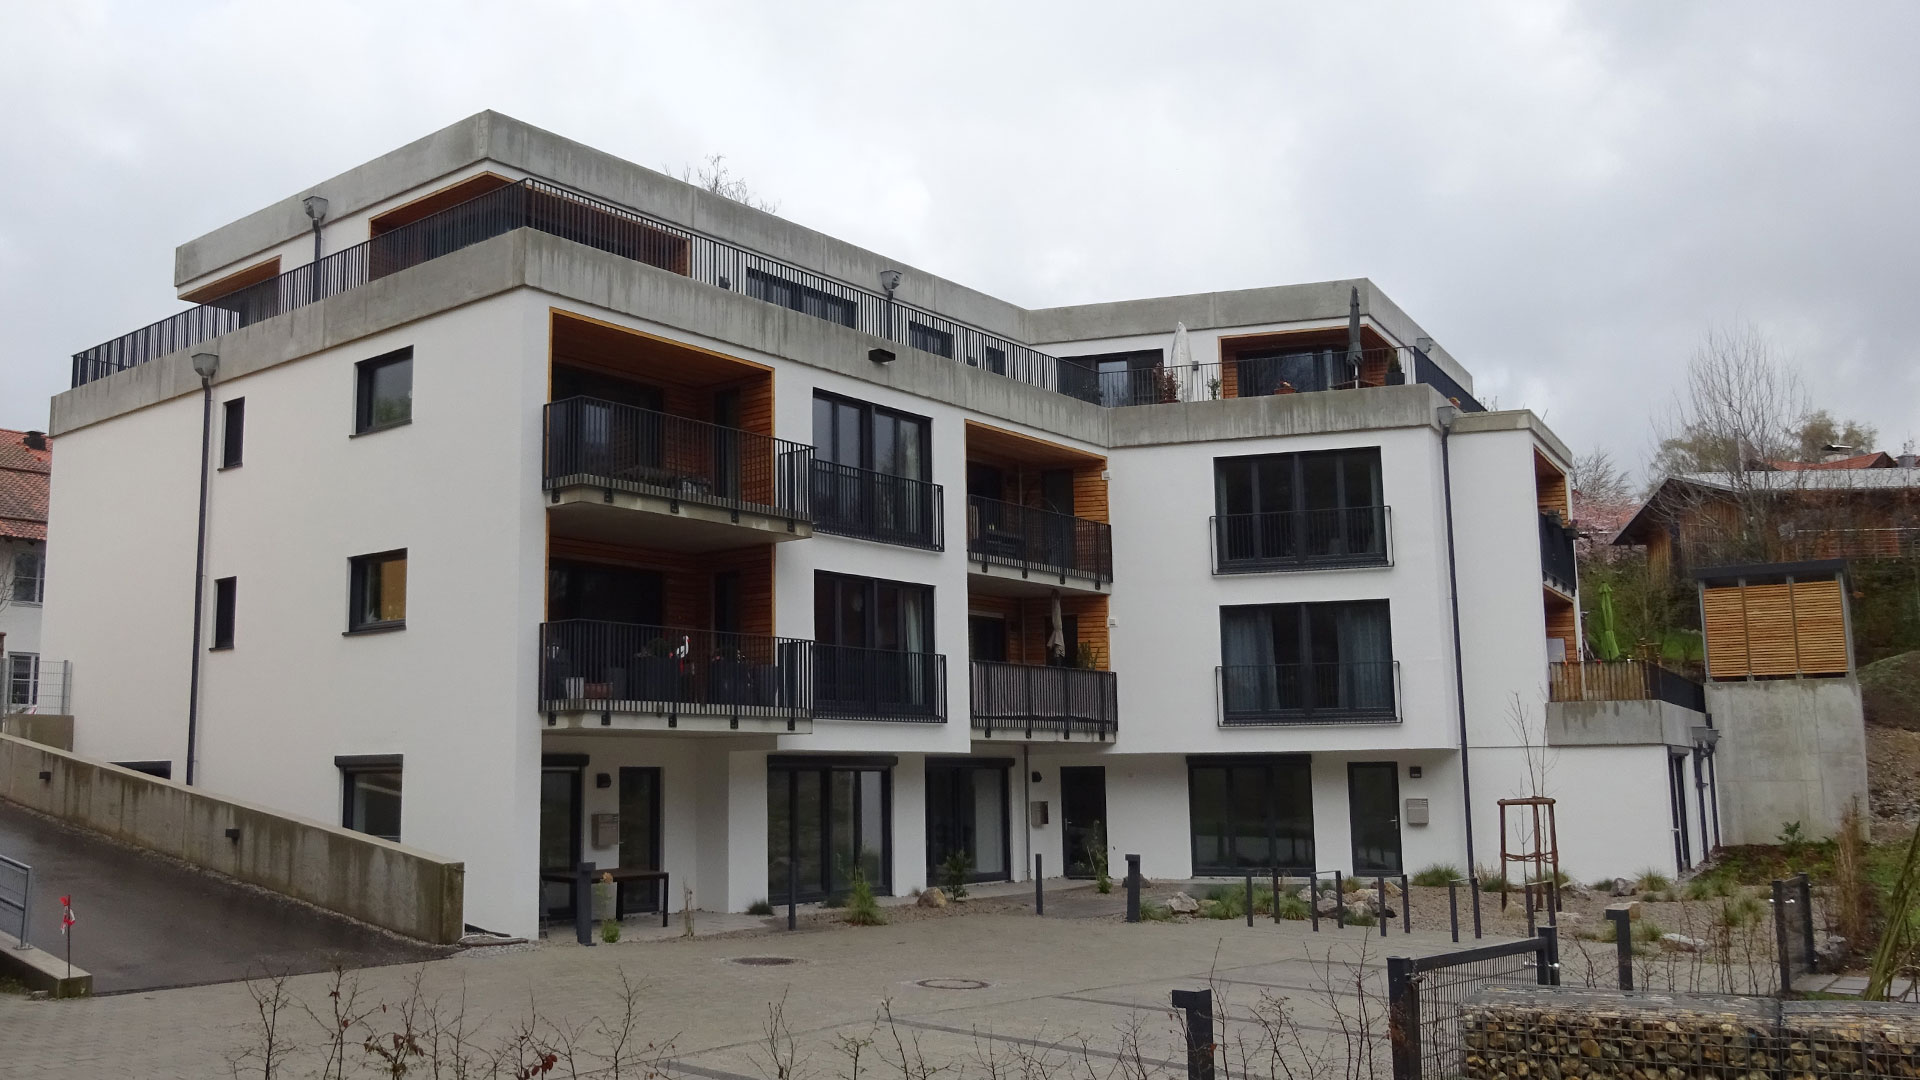 Impression des Atelierhaus in Tutzing - ein Projekt der Knecht Ingenieure GmbH